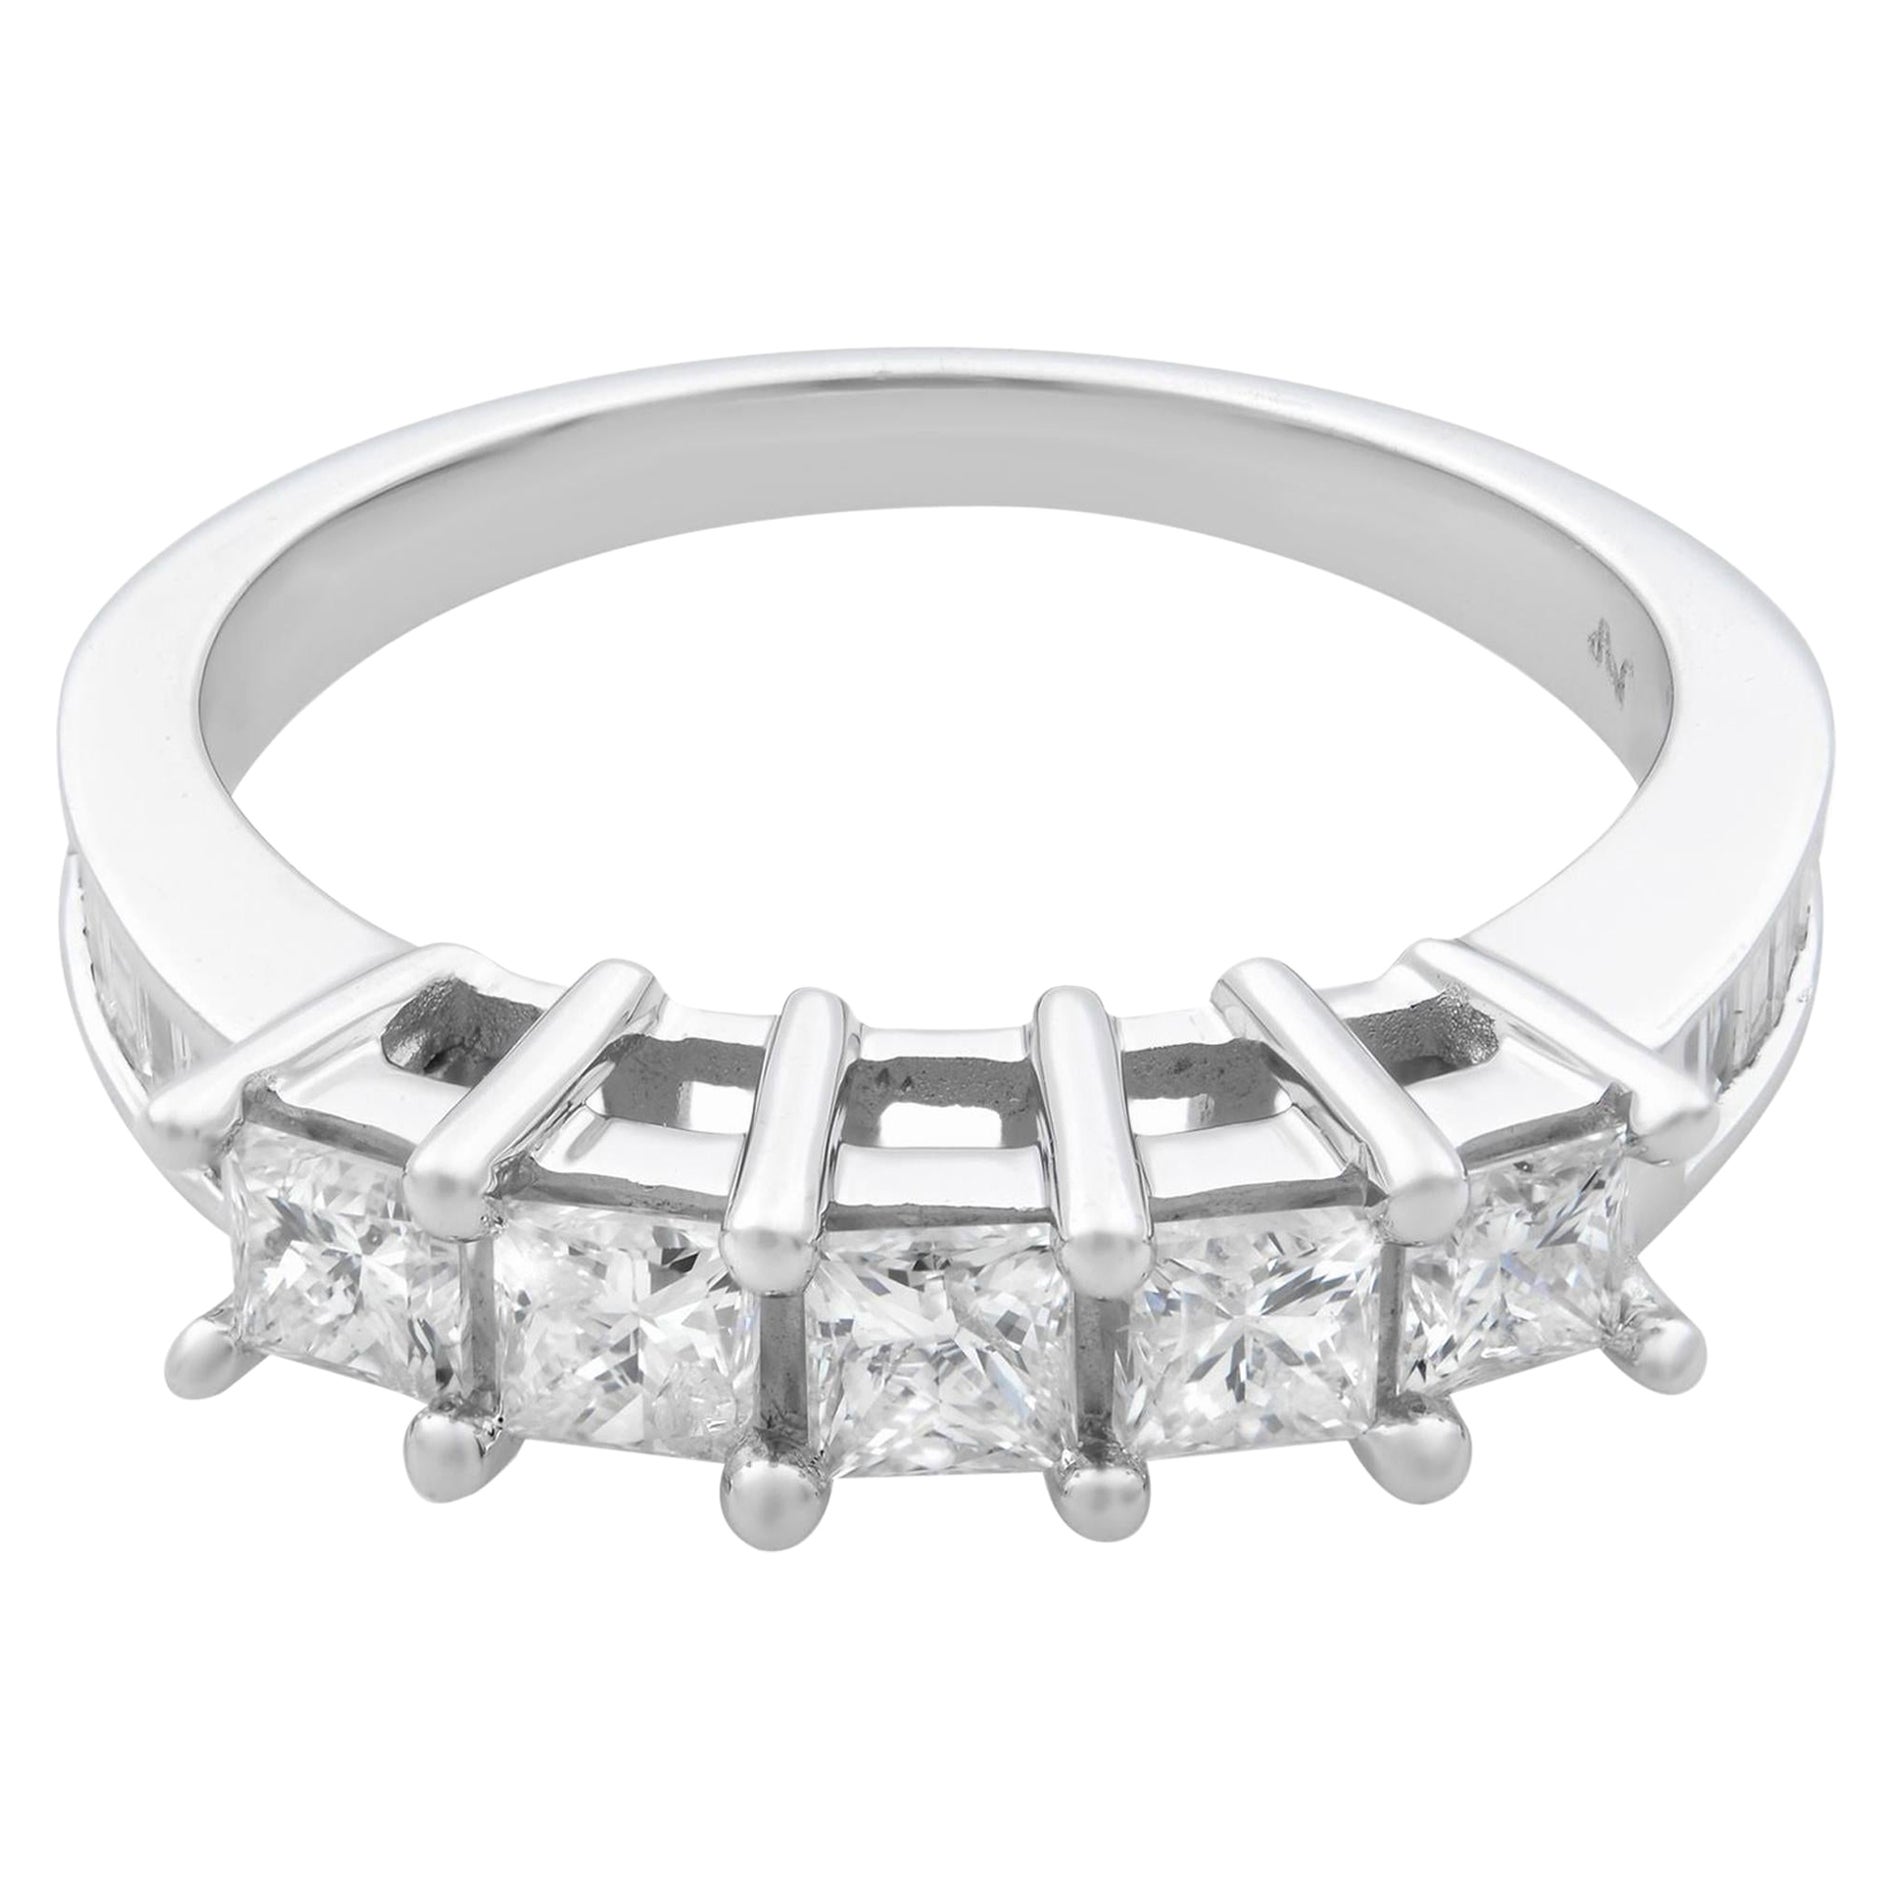 Rachel Koen Prinzessinnenschliff Diamant-Ehering 14K Weißgold 1,15 Gesamtkaratgewicht